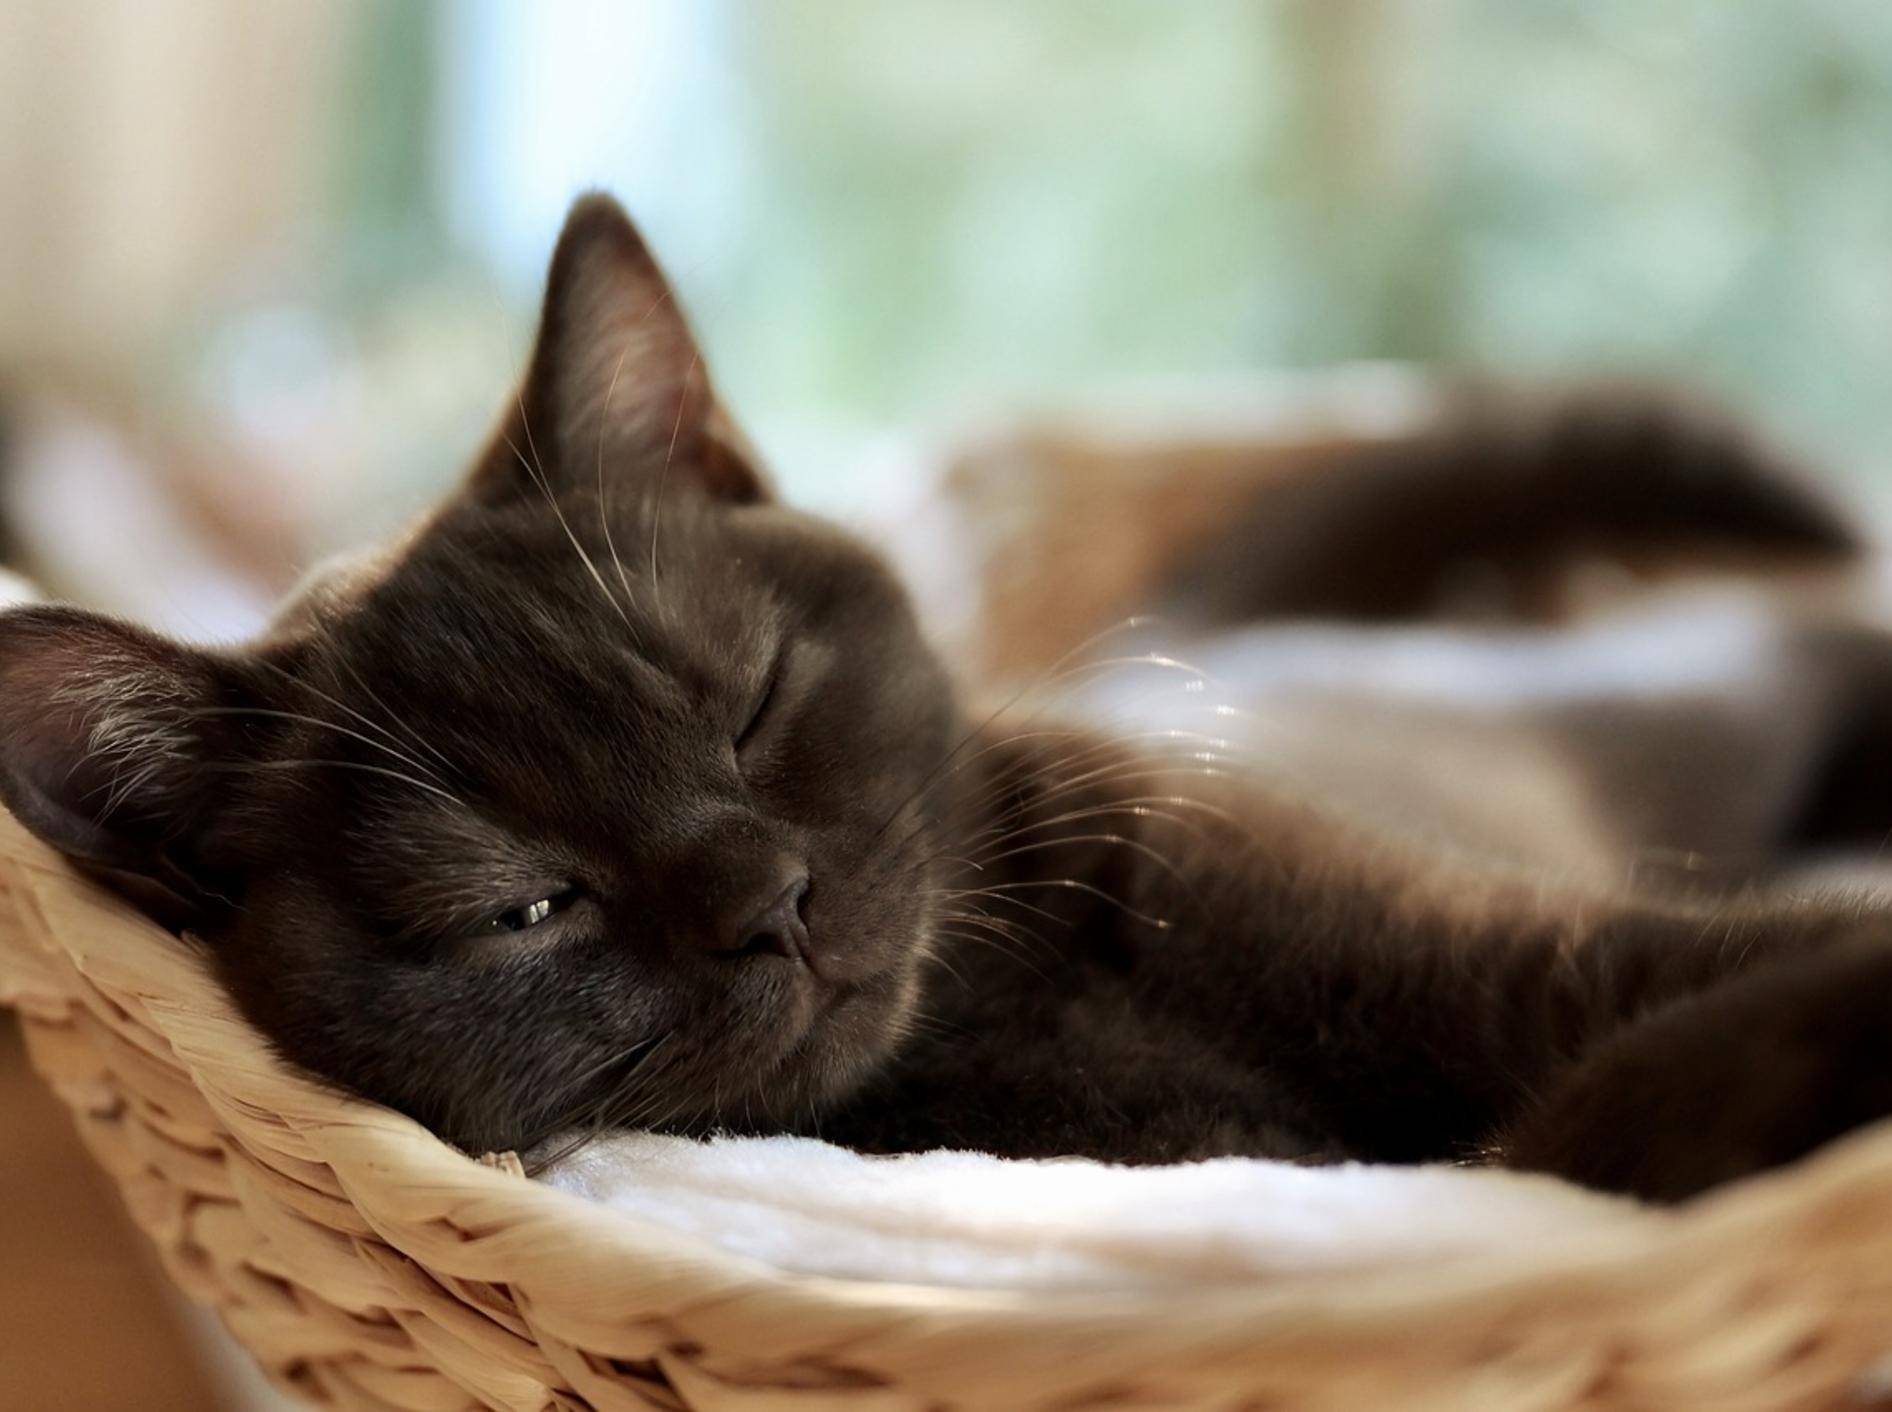 Nahaufnahme einer schlafenden schwarzen Katze im Körbchen.